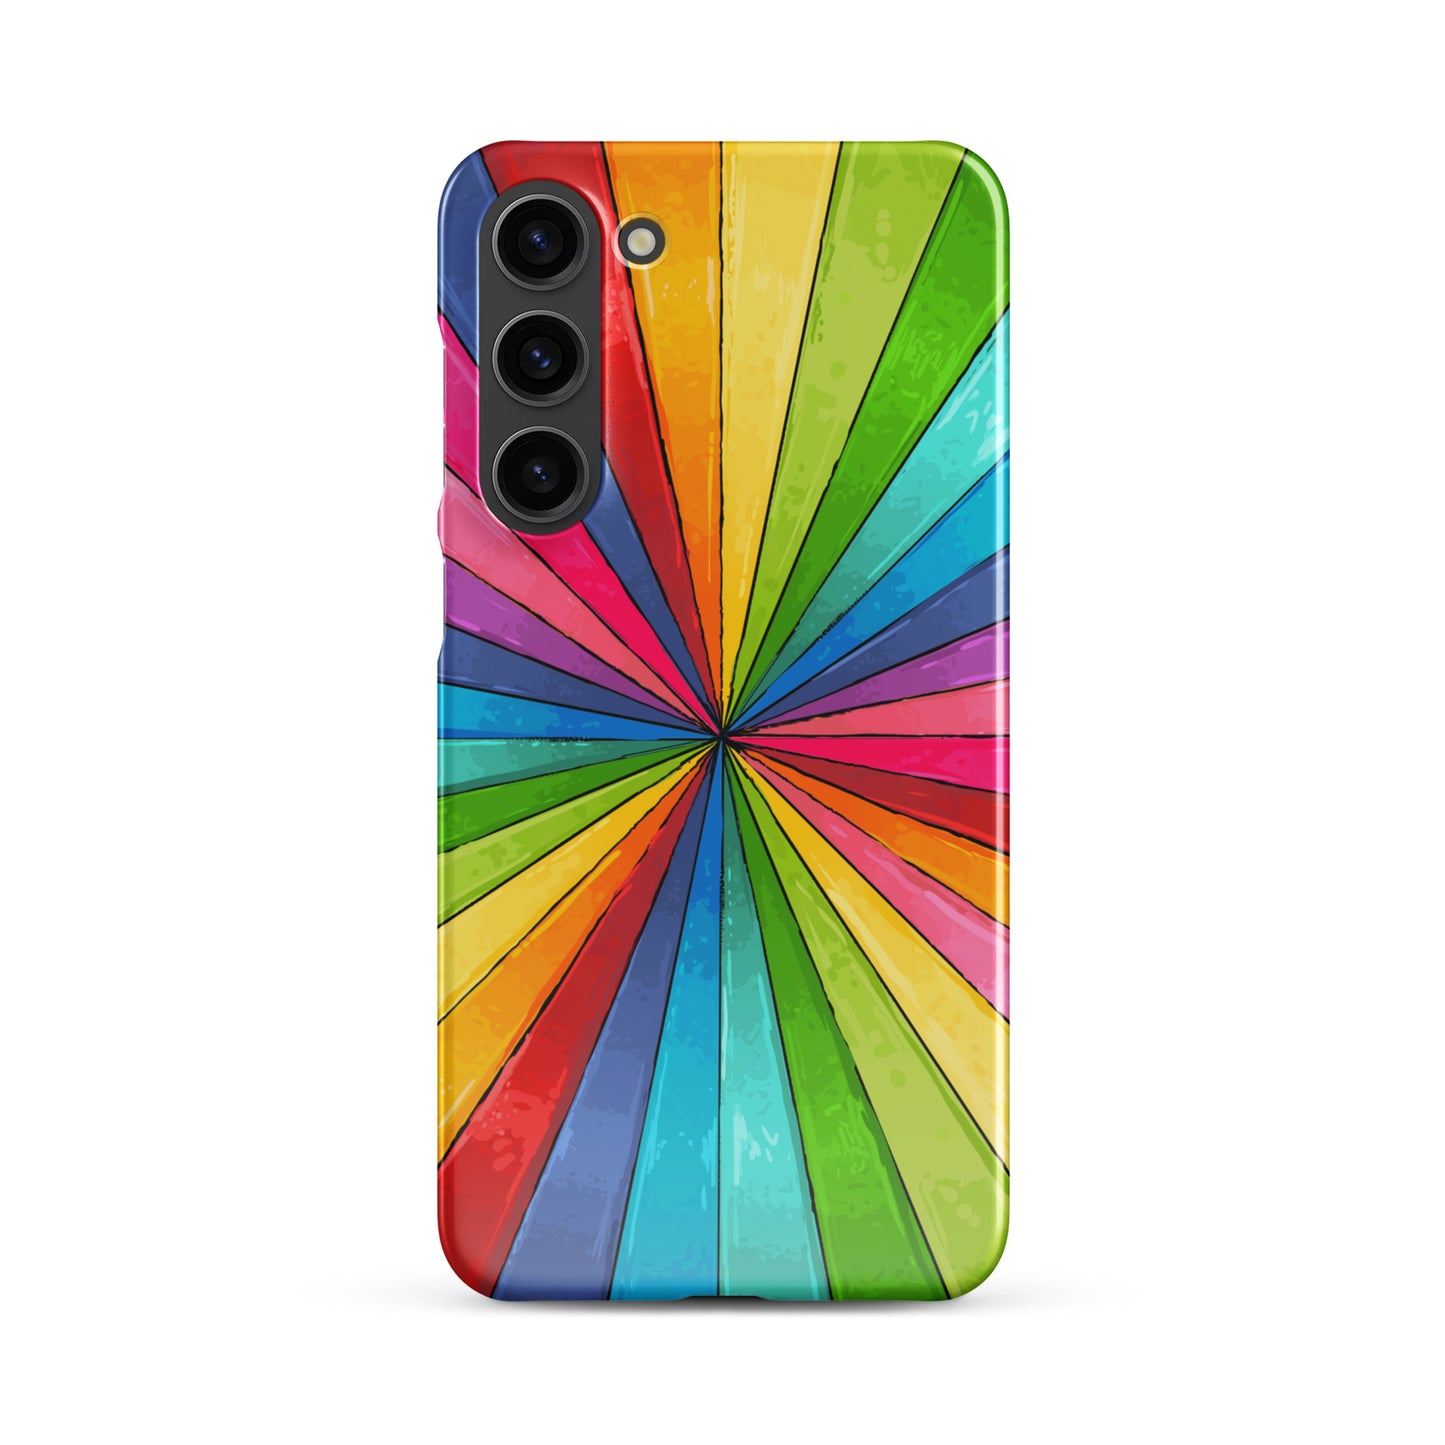 Rainbow Snap case for Samsung®